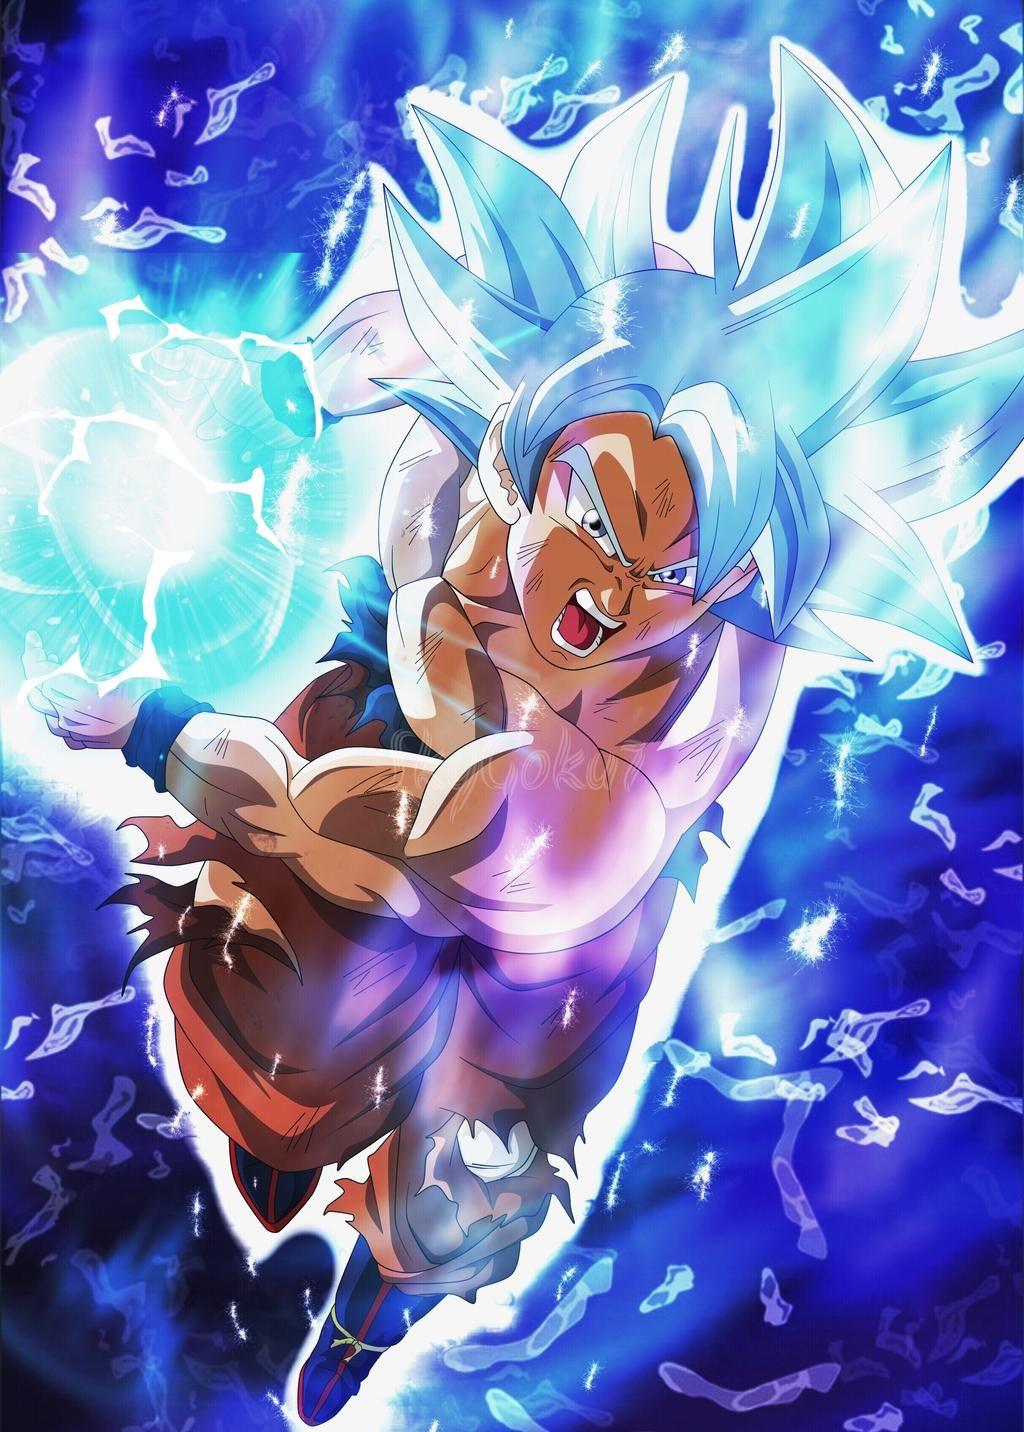 Ultra Instinct Goku Kamehameha by SkyGoku7. Dragon ball super artwork, Dragon ball art goku, Anime dragon ball super